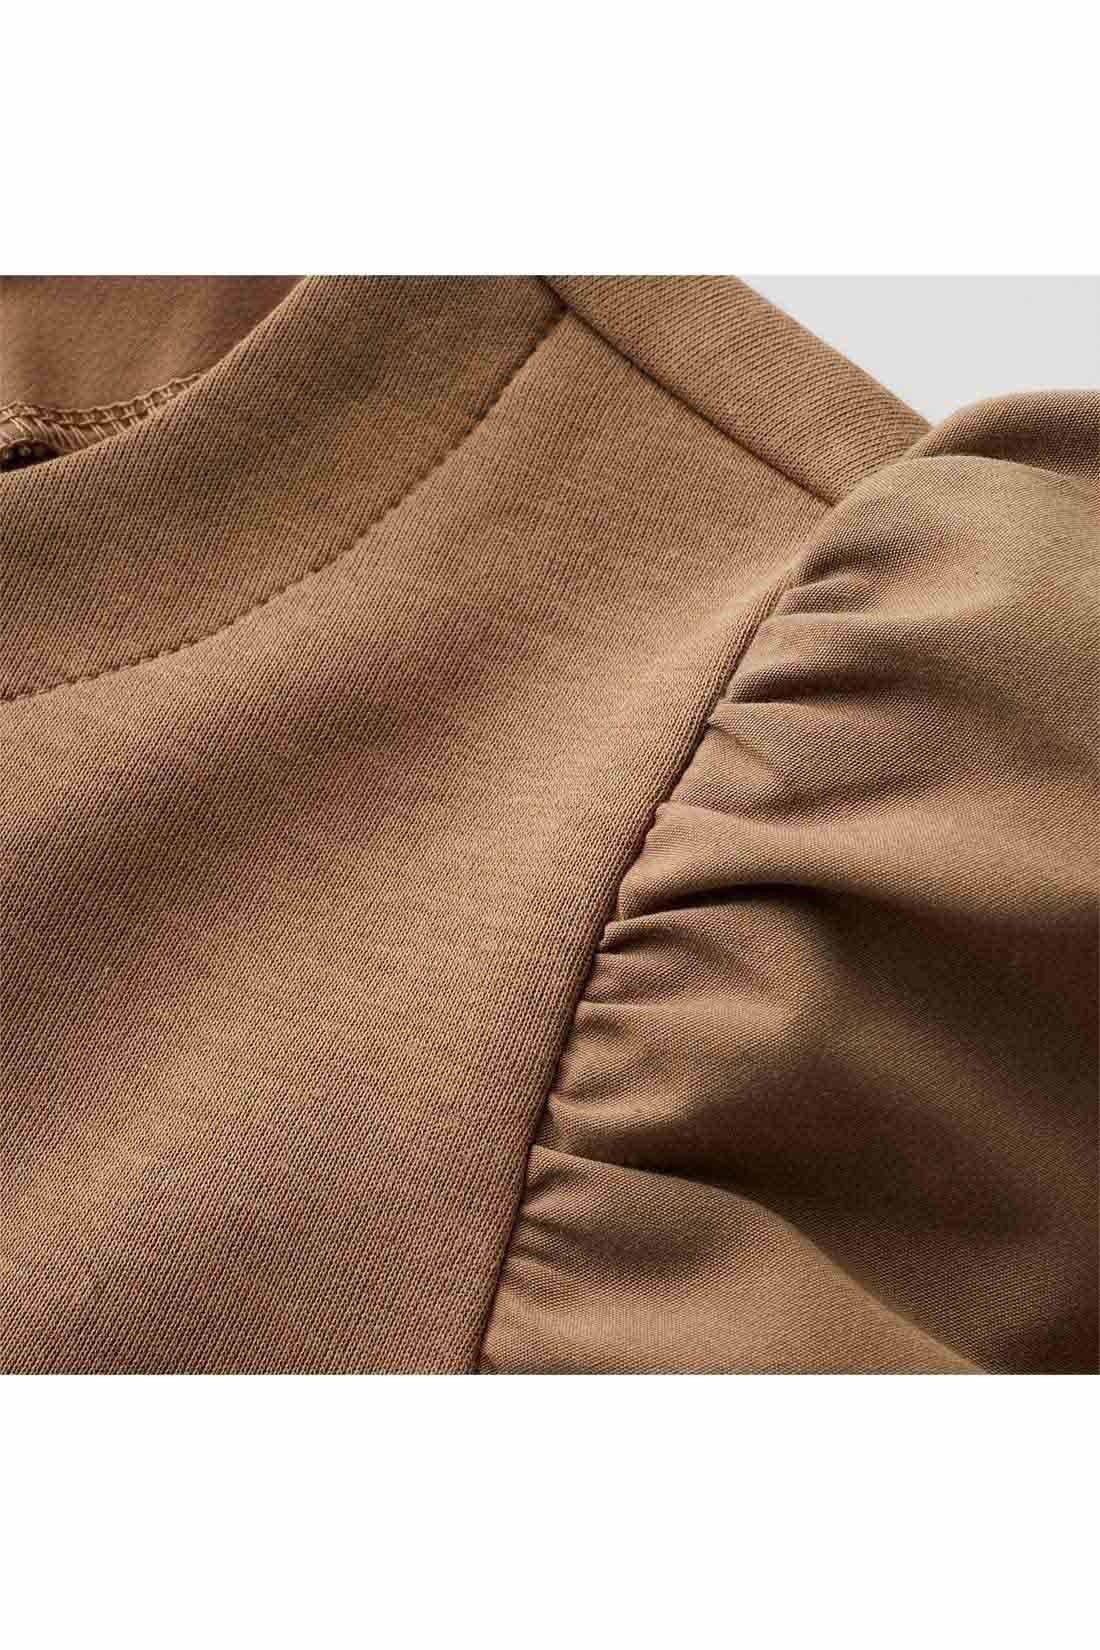 Real Stock|IEDIT[イディット]　ふんわり袖デザインが華やかな 異素材切り替えプルオーバー〈ブラック〉|袖は張り感のある布はく素材で軽やかに。身ごろはほどよく厚みがあり表面感のきれいなカットソー素材。　※お届けするカラーとは異なります。